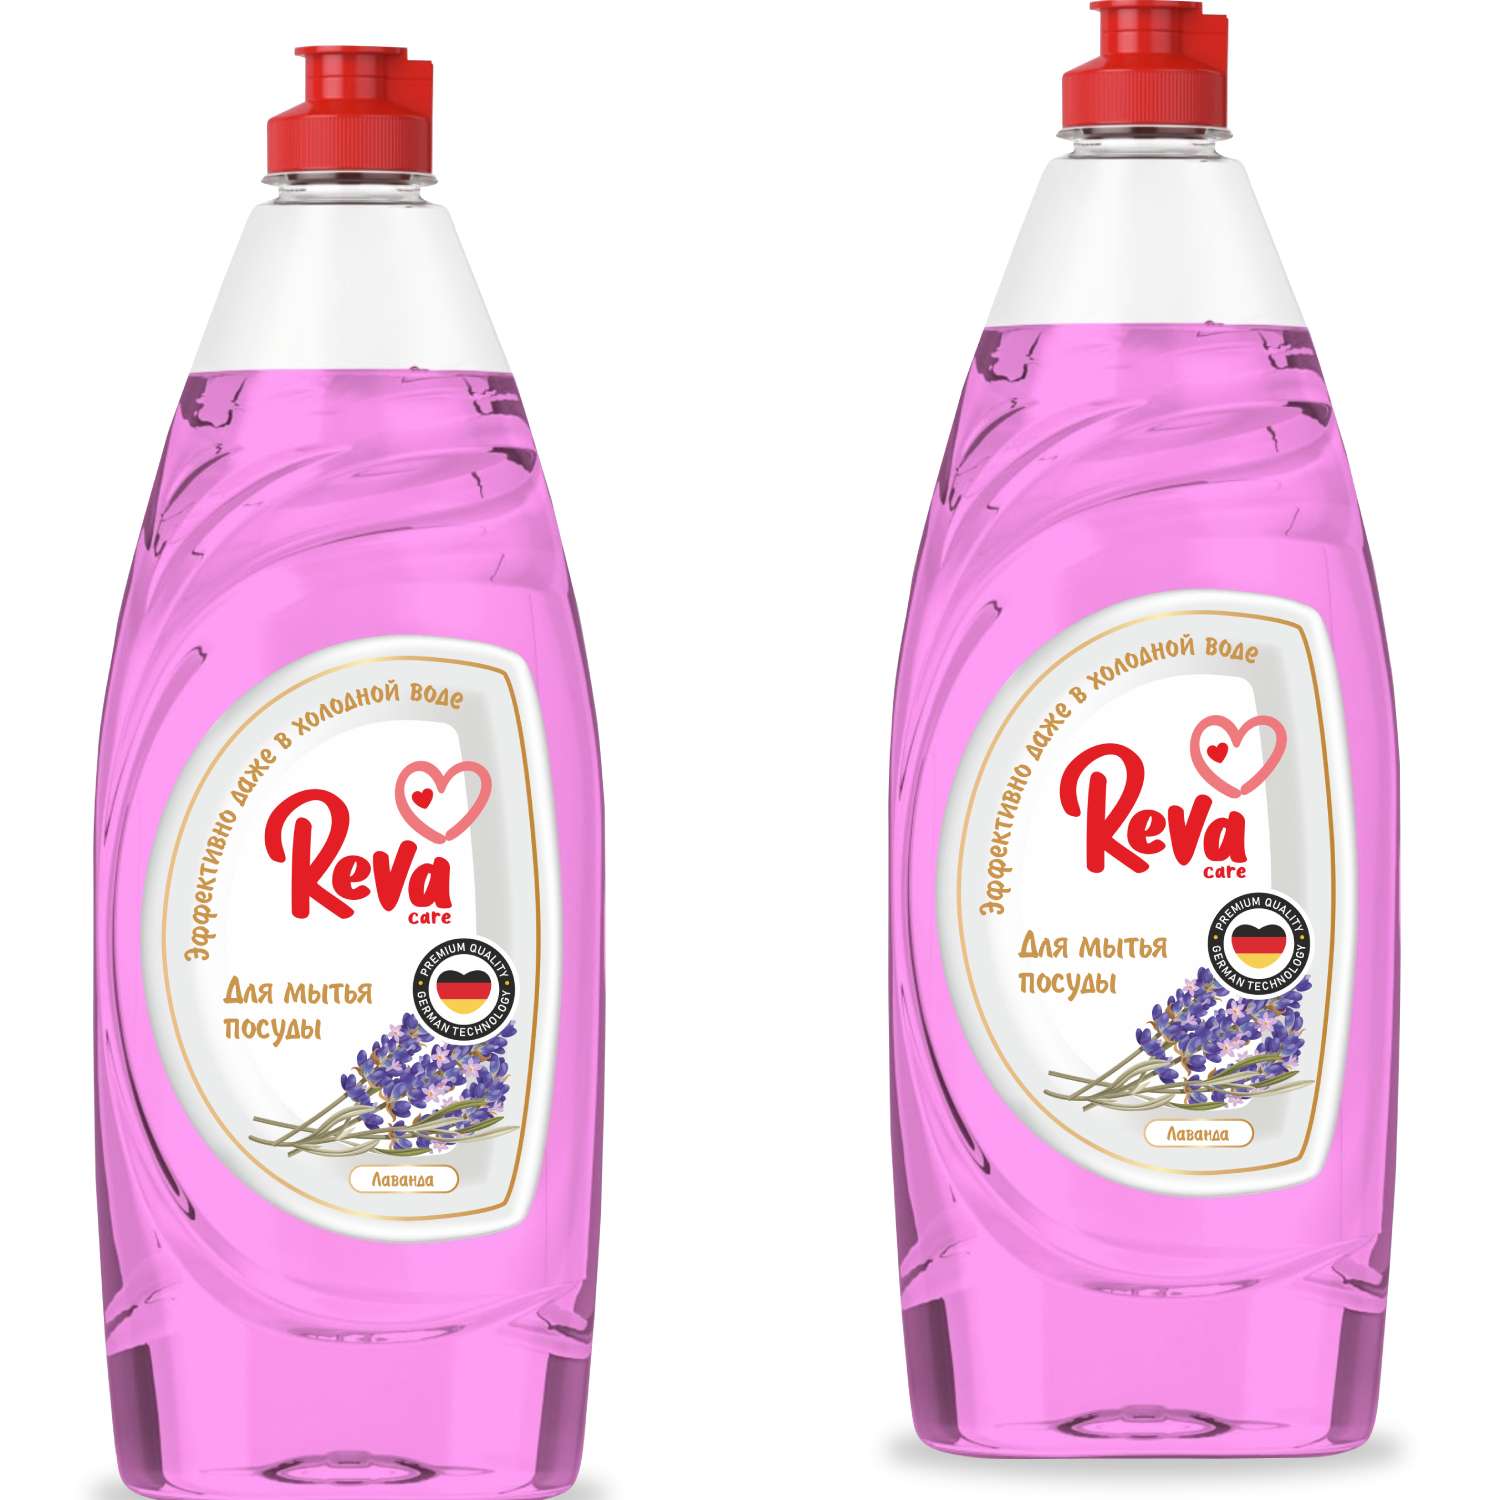 Средство для мытья посуды Reva Care эко гель 5 л с ароматом Лаванды 2 упаковки по 650 мл - фото 1